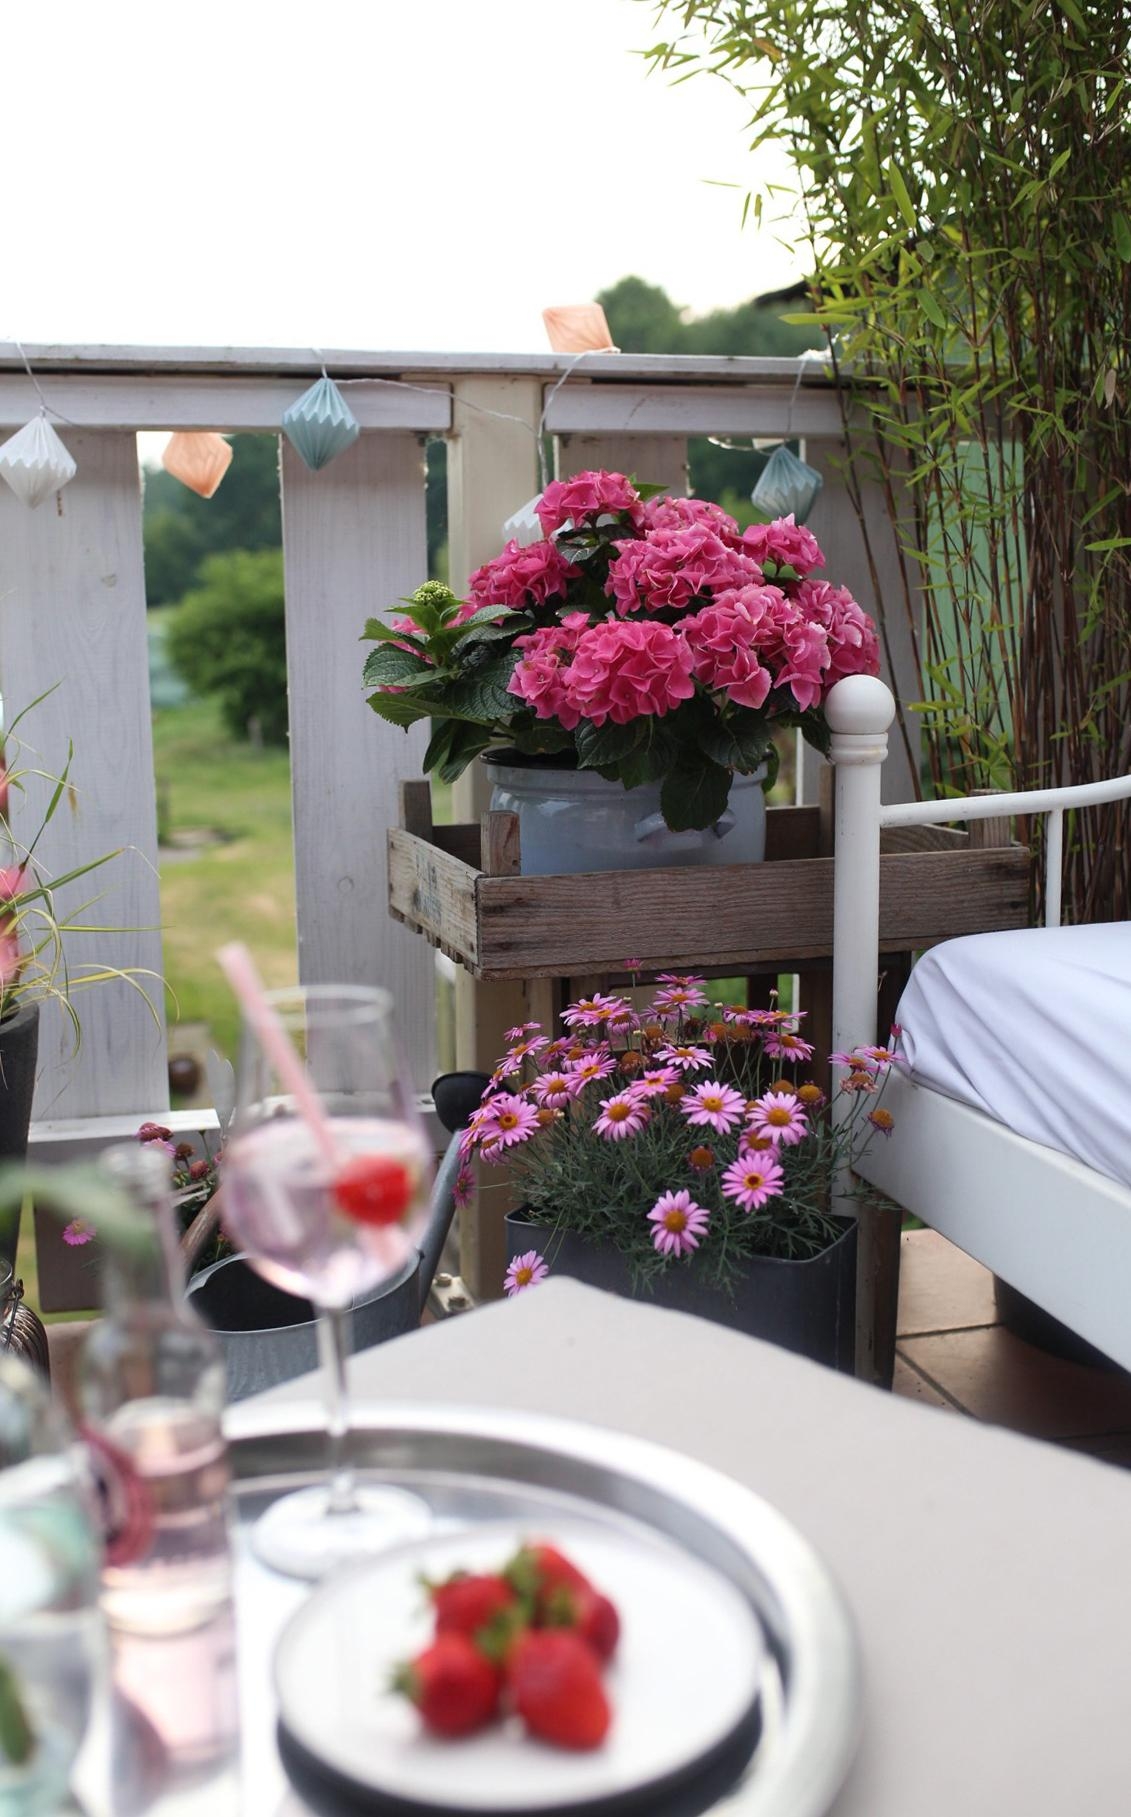 Balkonien du wunderschöner Ort ! Die pink farbende Hortensie macht es noch schöner #hortensienwoche #balkon #cheers